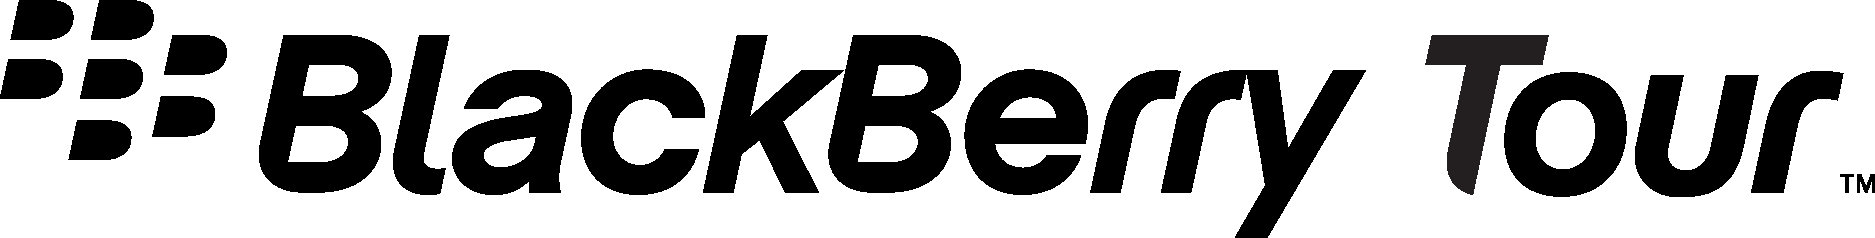 BlackBerry Tour Logo Vector